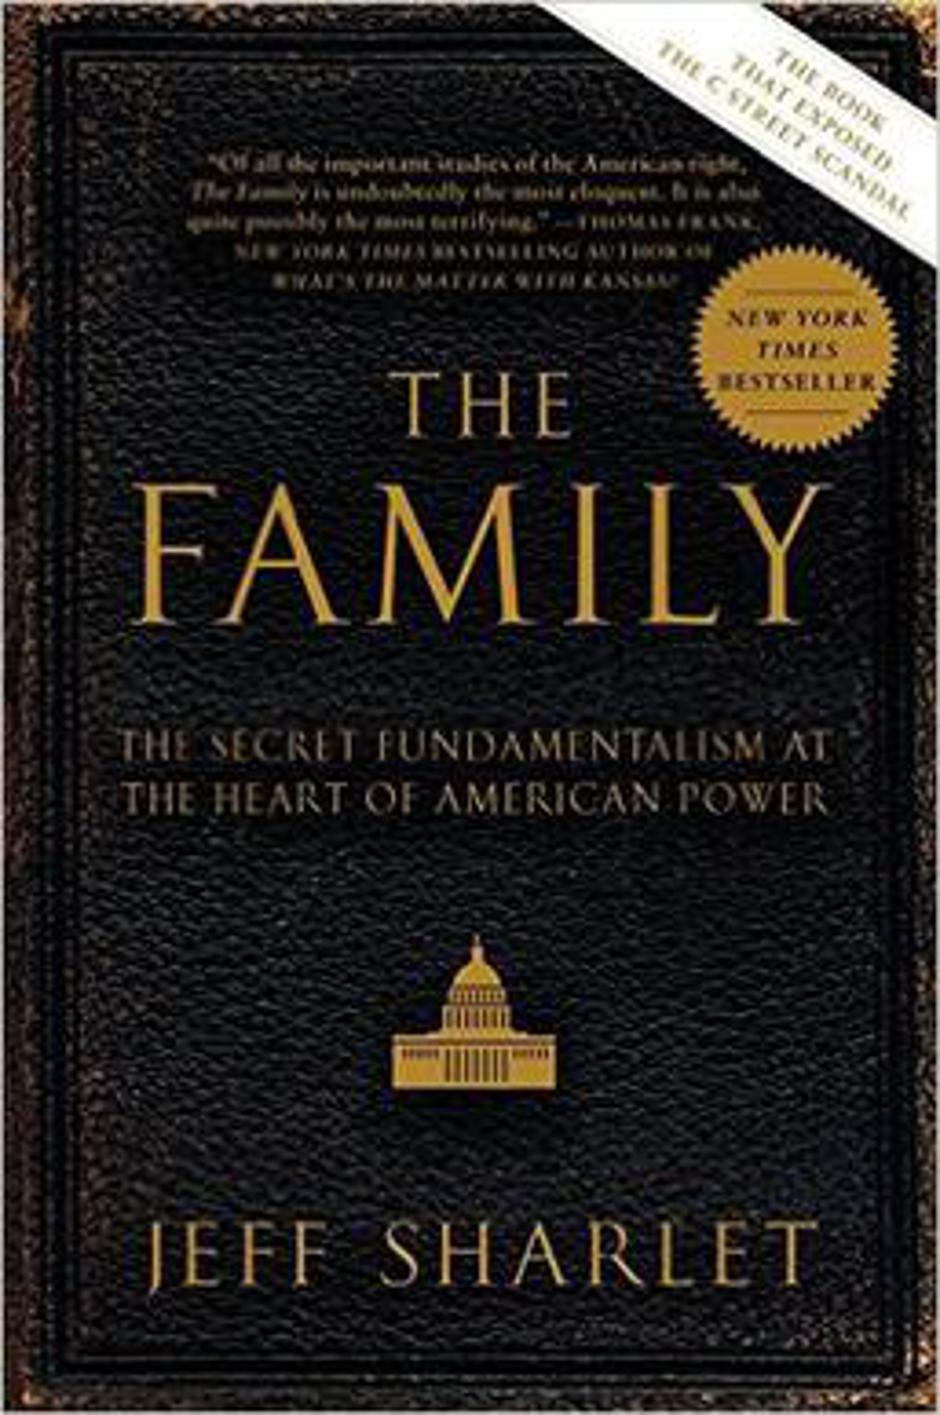 Knjiga 'The Family' Jeffa Sharleta | Author: Wikipedia Commons